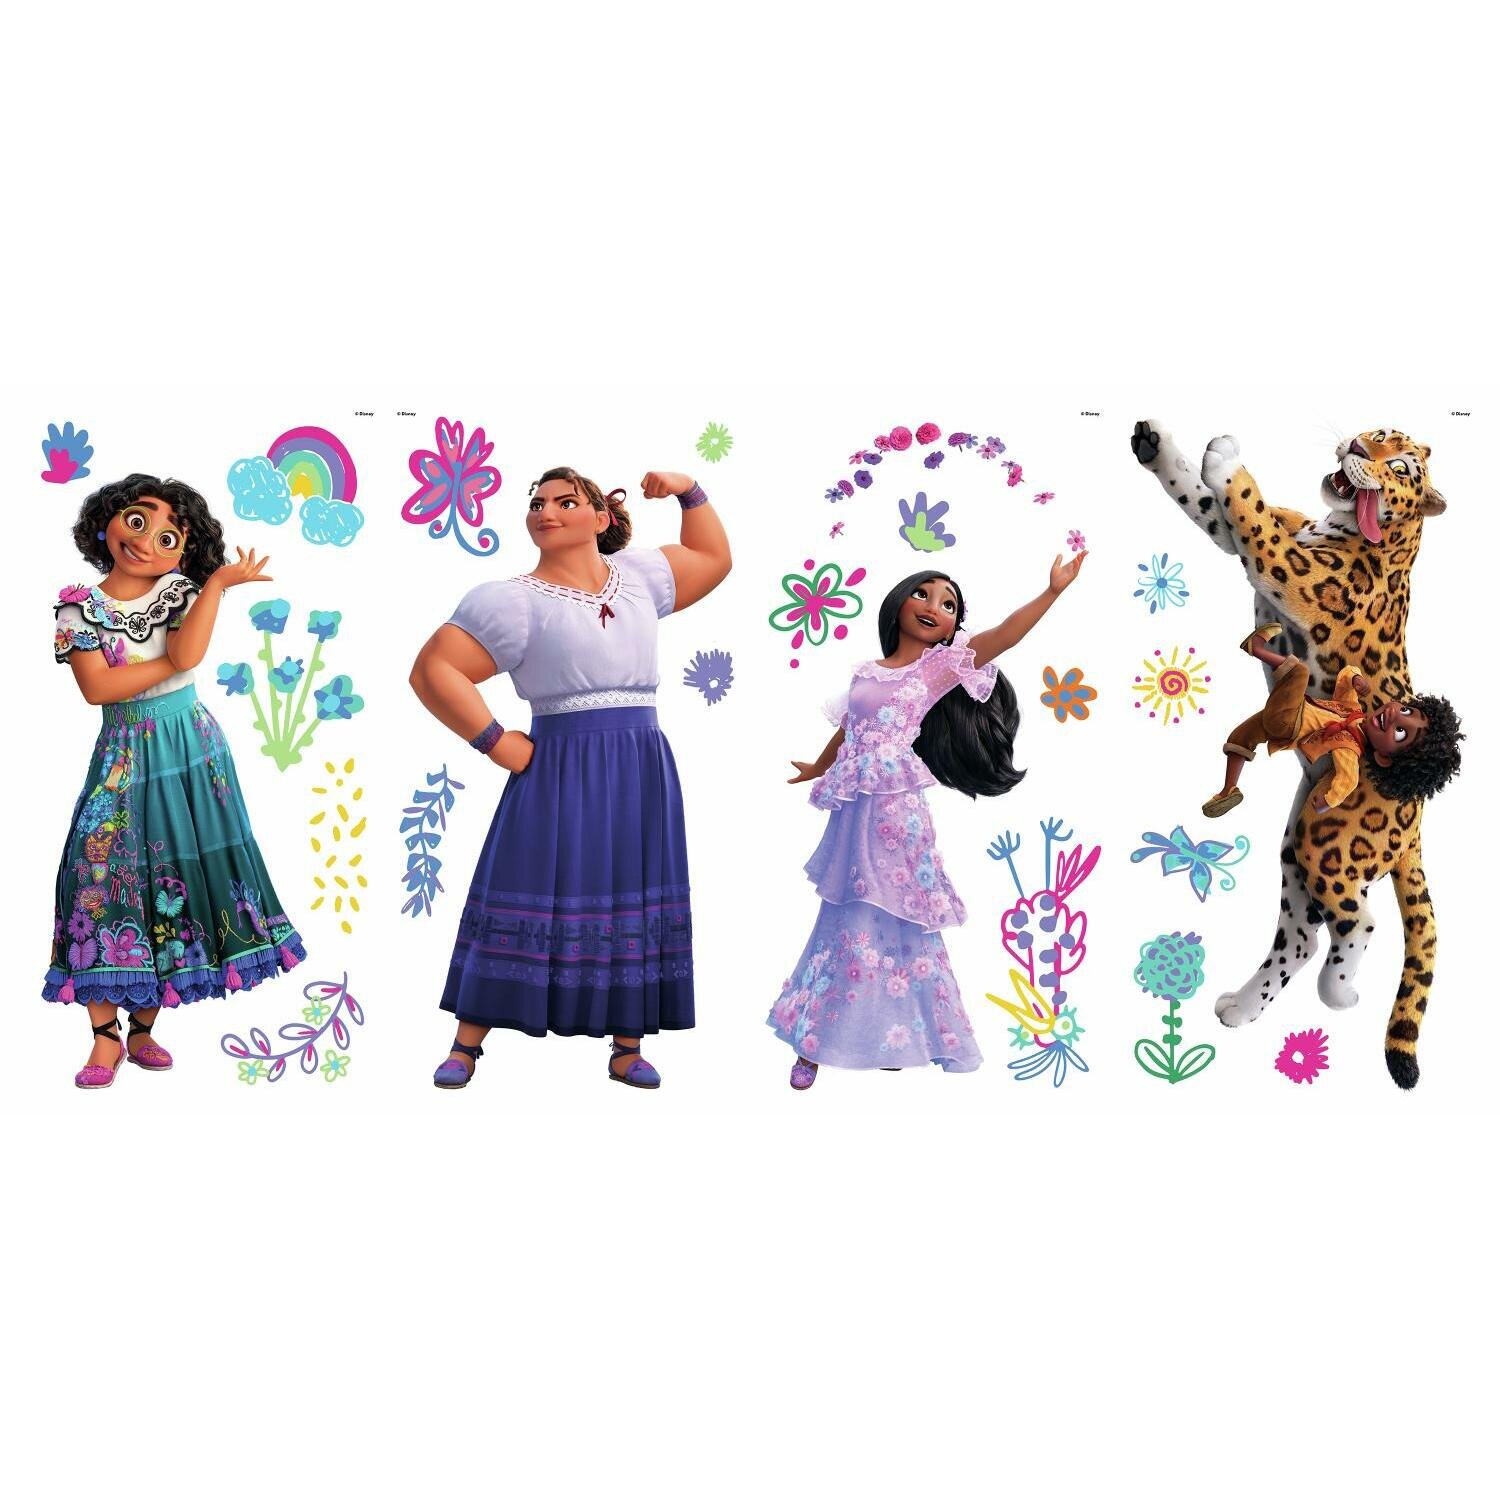 15 Encanto Large Stickers - Mirabel, Isabela, Luisa, Antonio Madrigal -  Disney